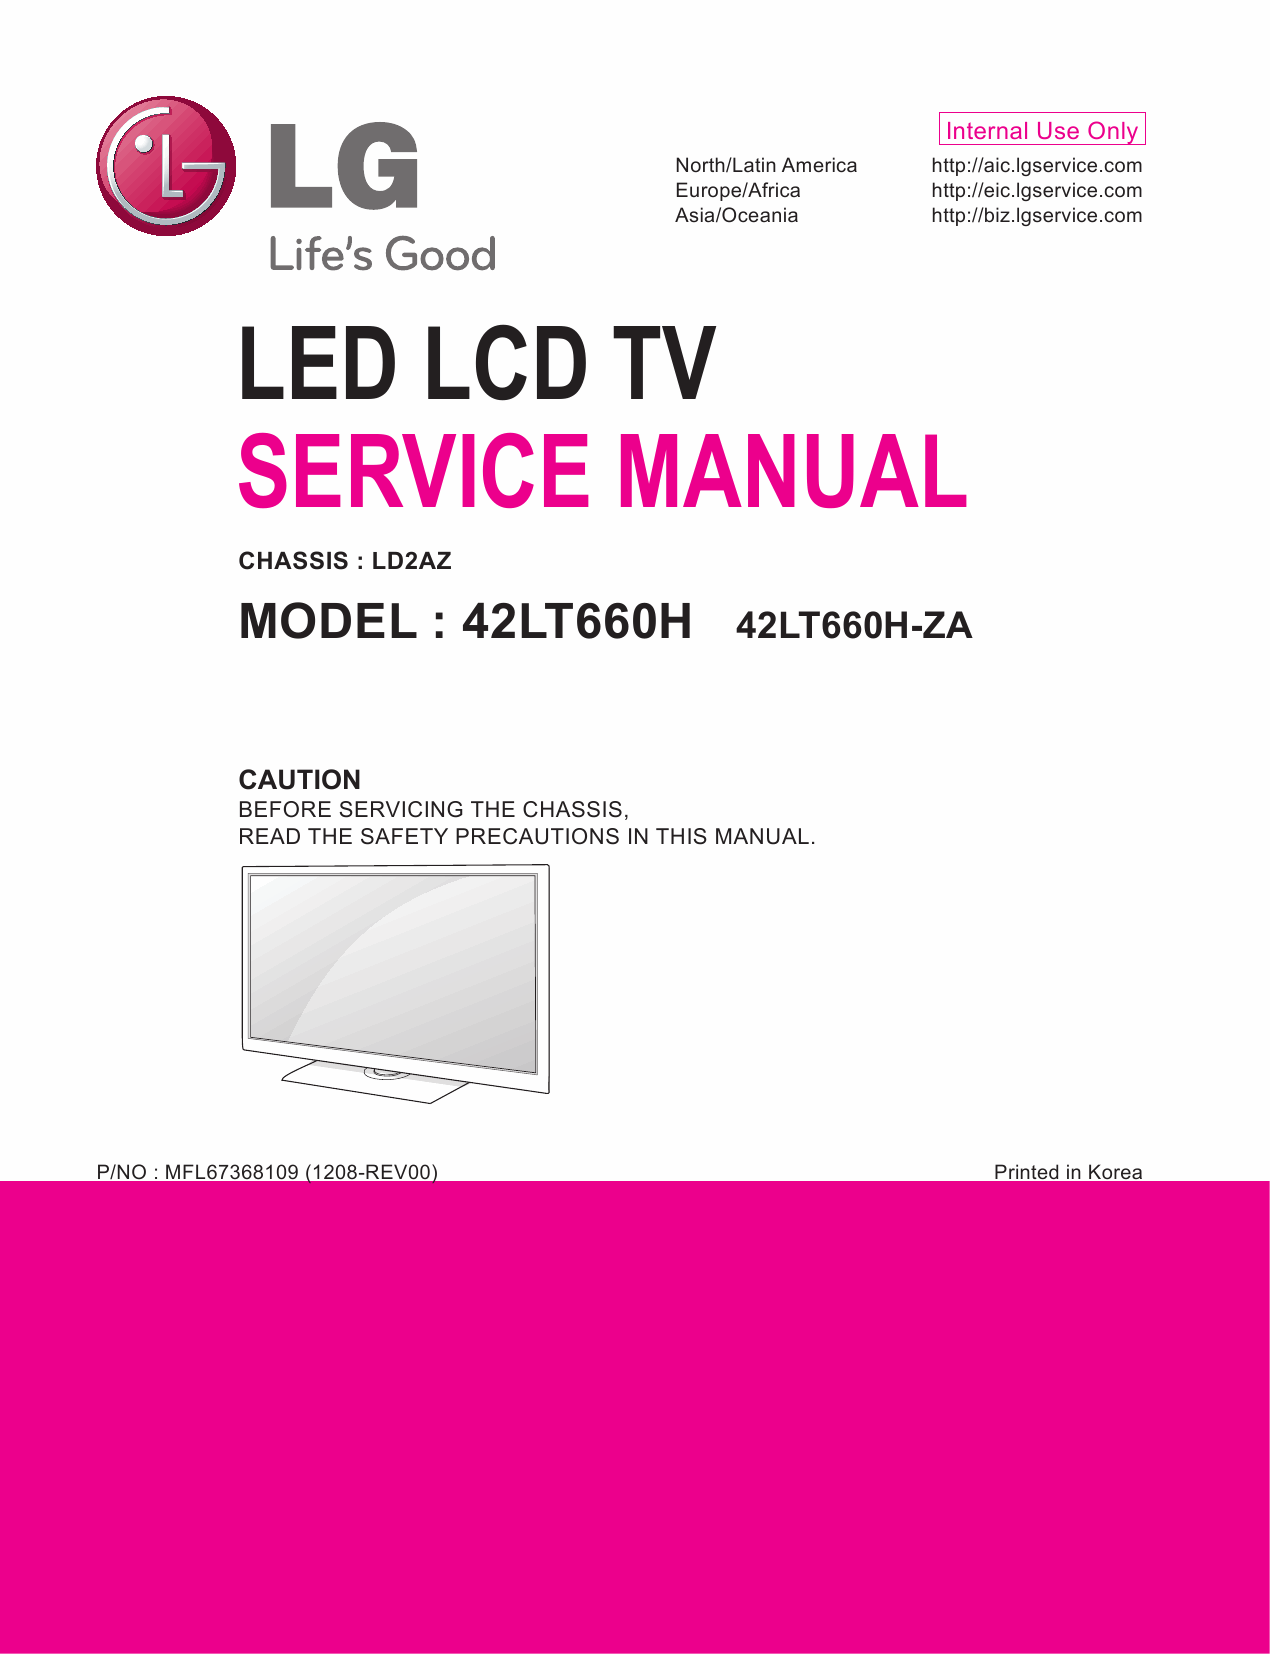 LG_LED_TV_42LT660H_Service_Manual_2012_Qmanual.com-1